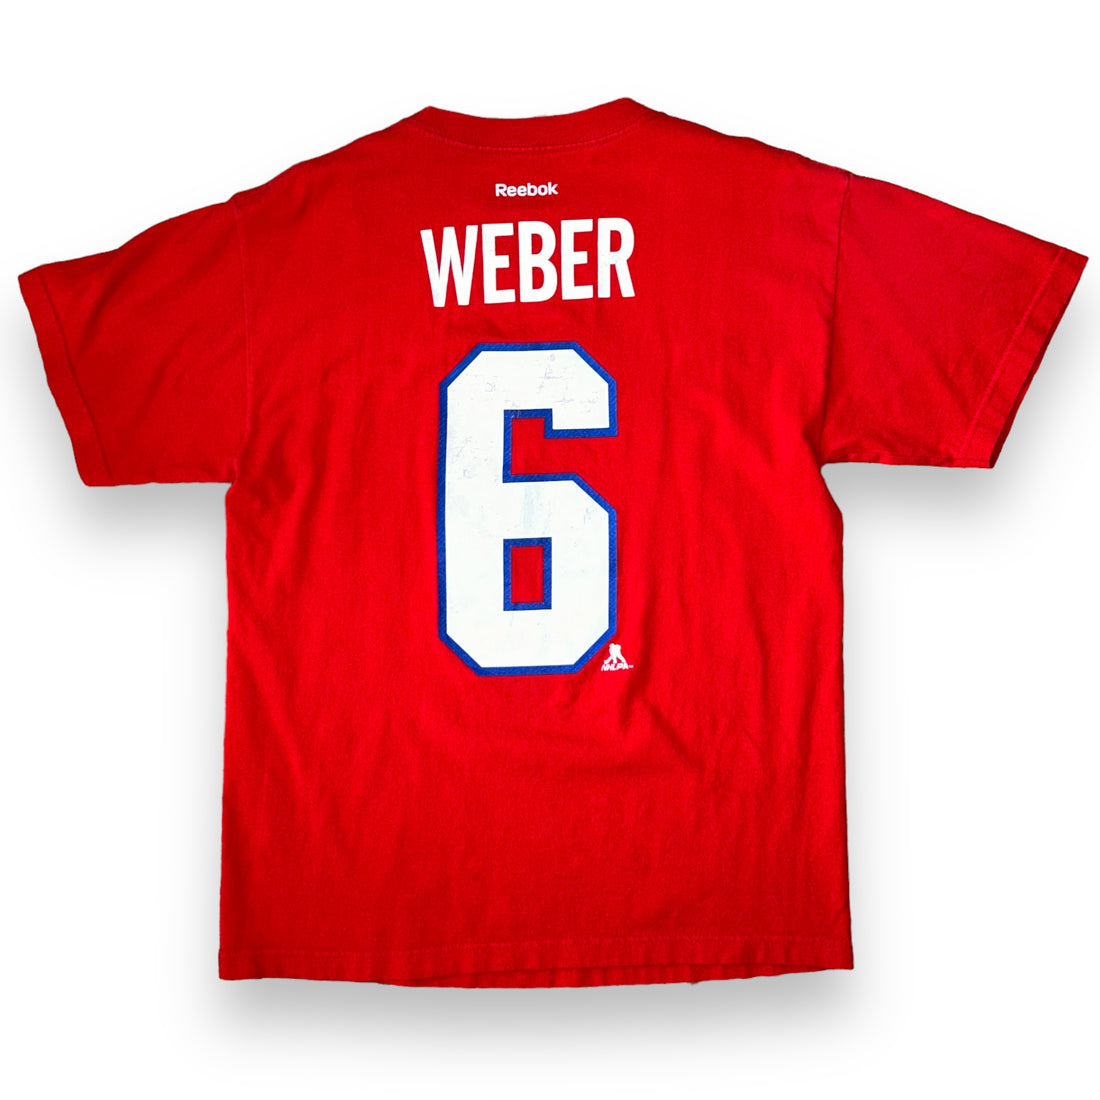 T-Shirt Reebok Montreal Canadiens NHL (M)